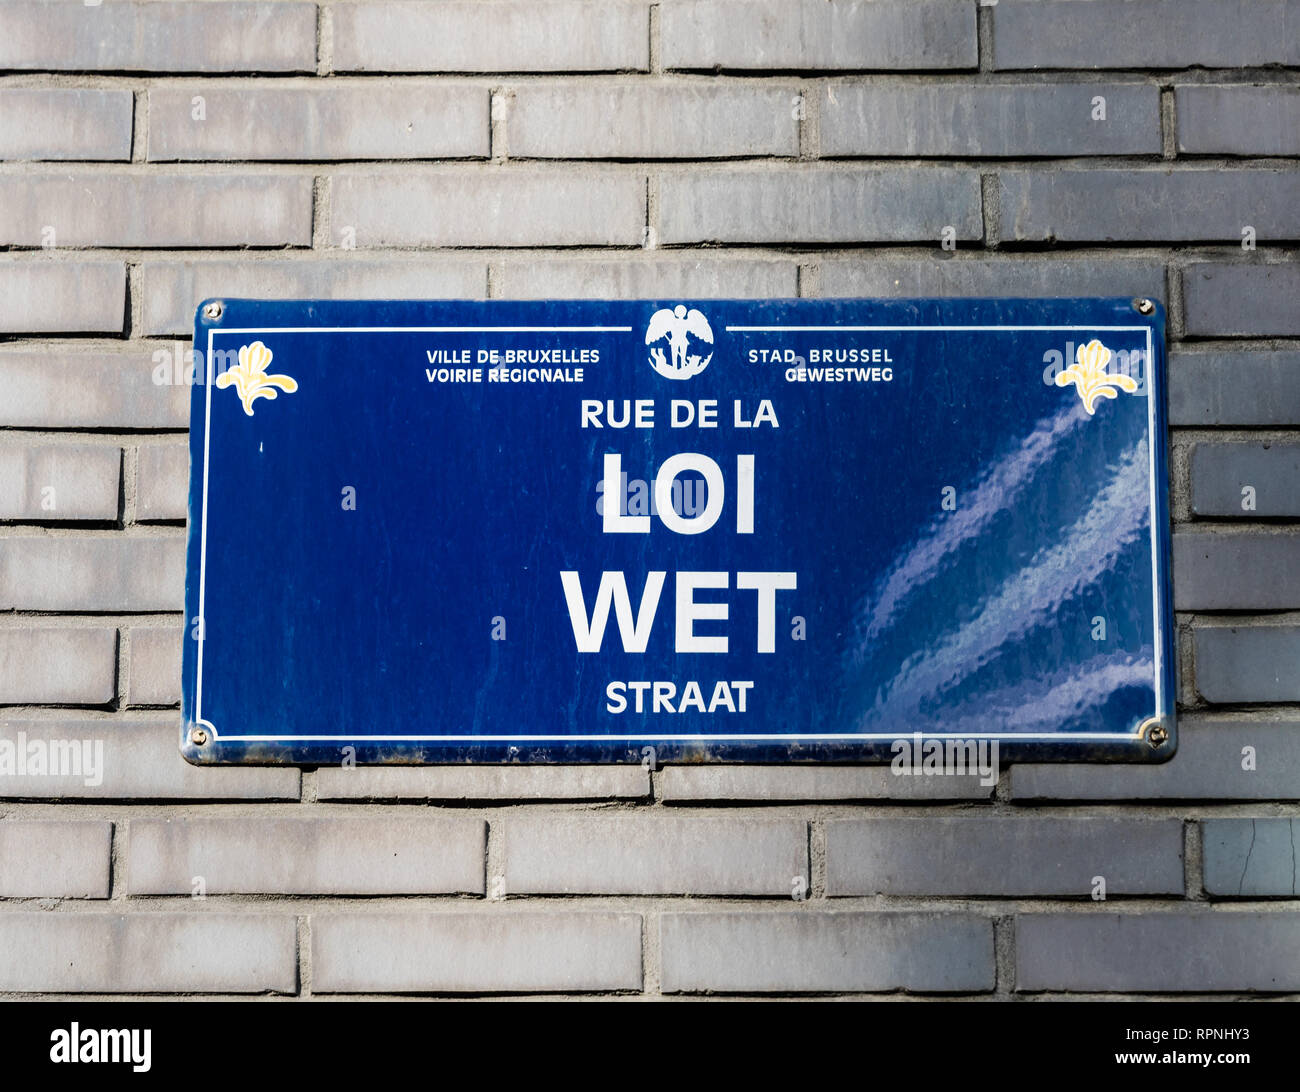 Stadt Brüssel/Belgien - 02 15 2019: straßenname Tag auf einem Backstein Fassade der Rue de la Loi - wetstraat - Gesetz der Straße in der Europäischen und Business q Stockfoto